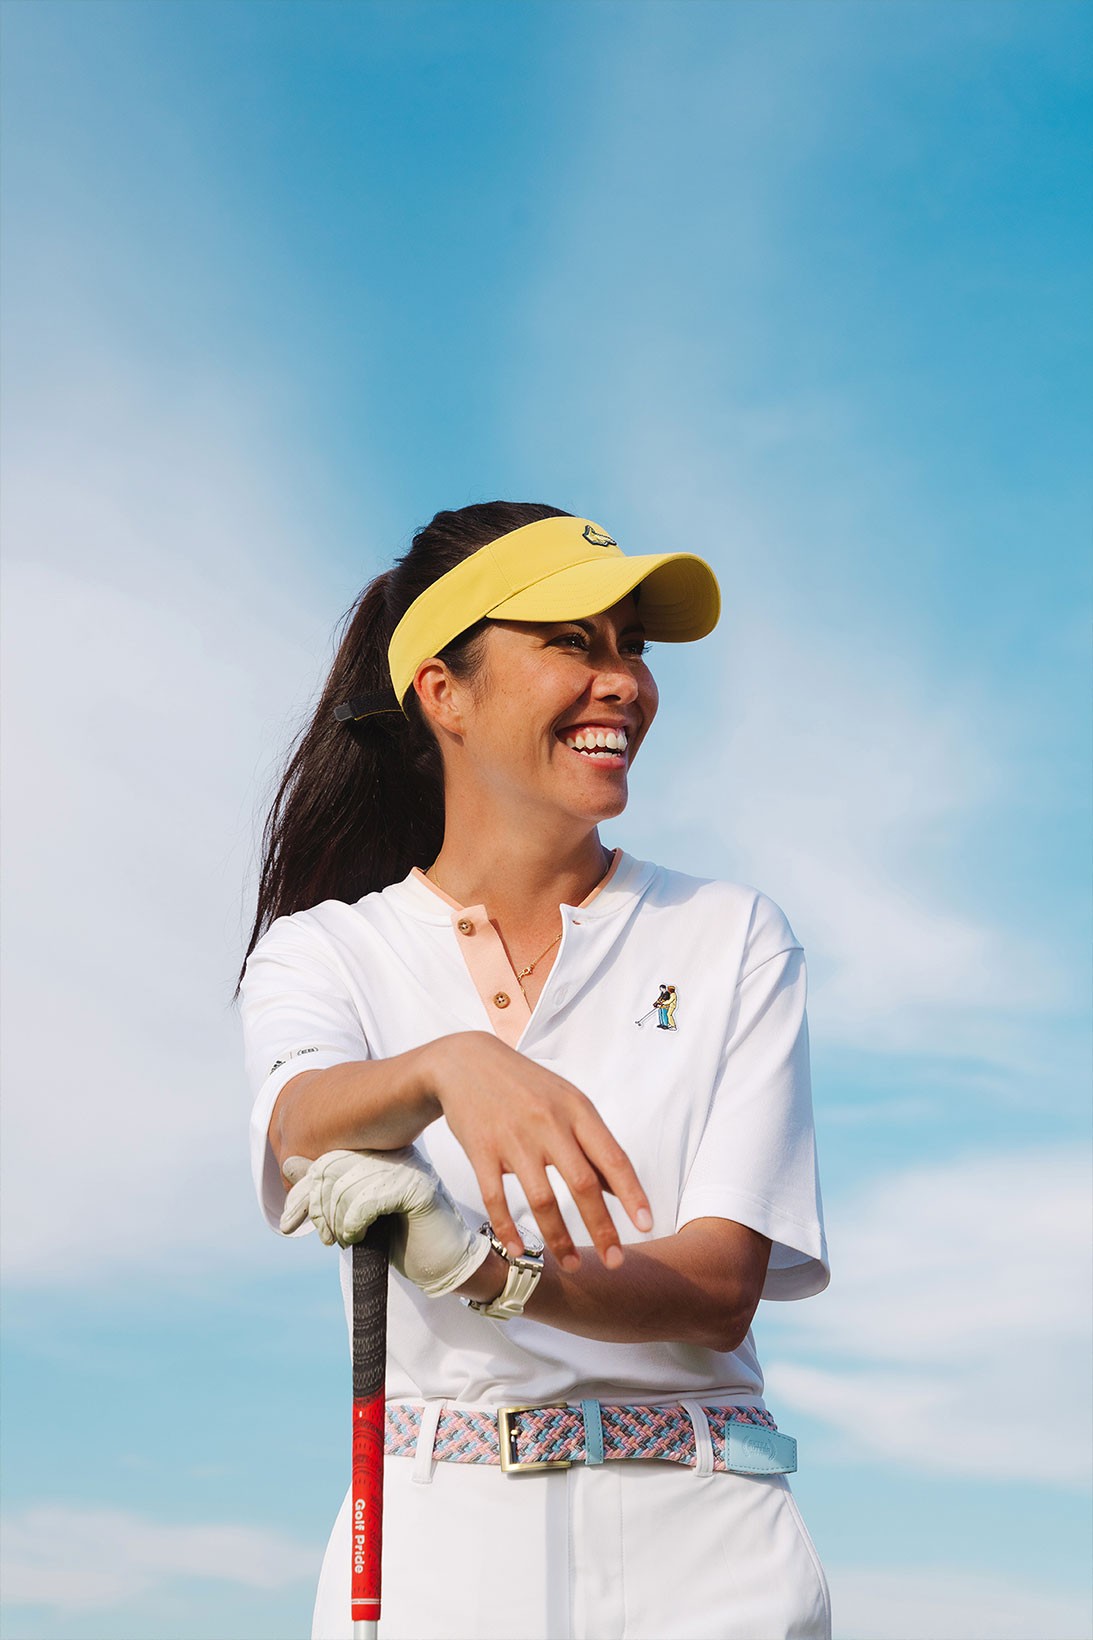 adidas выпустил гольф-коллекцию в стиле комедии «Счастливчик Гилмор» (фото 19)